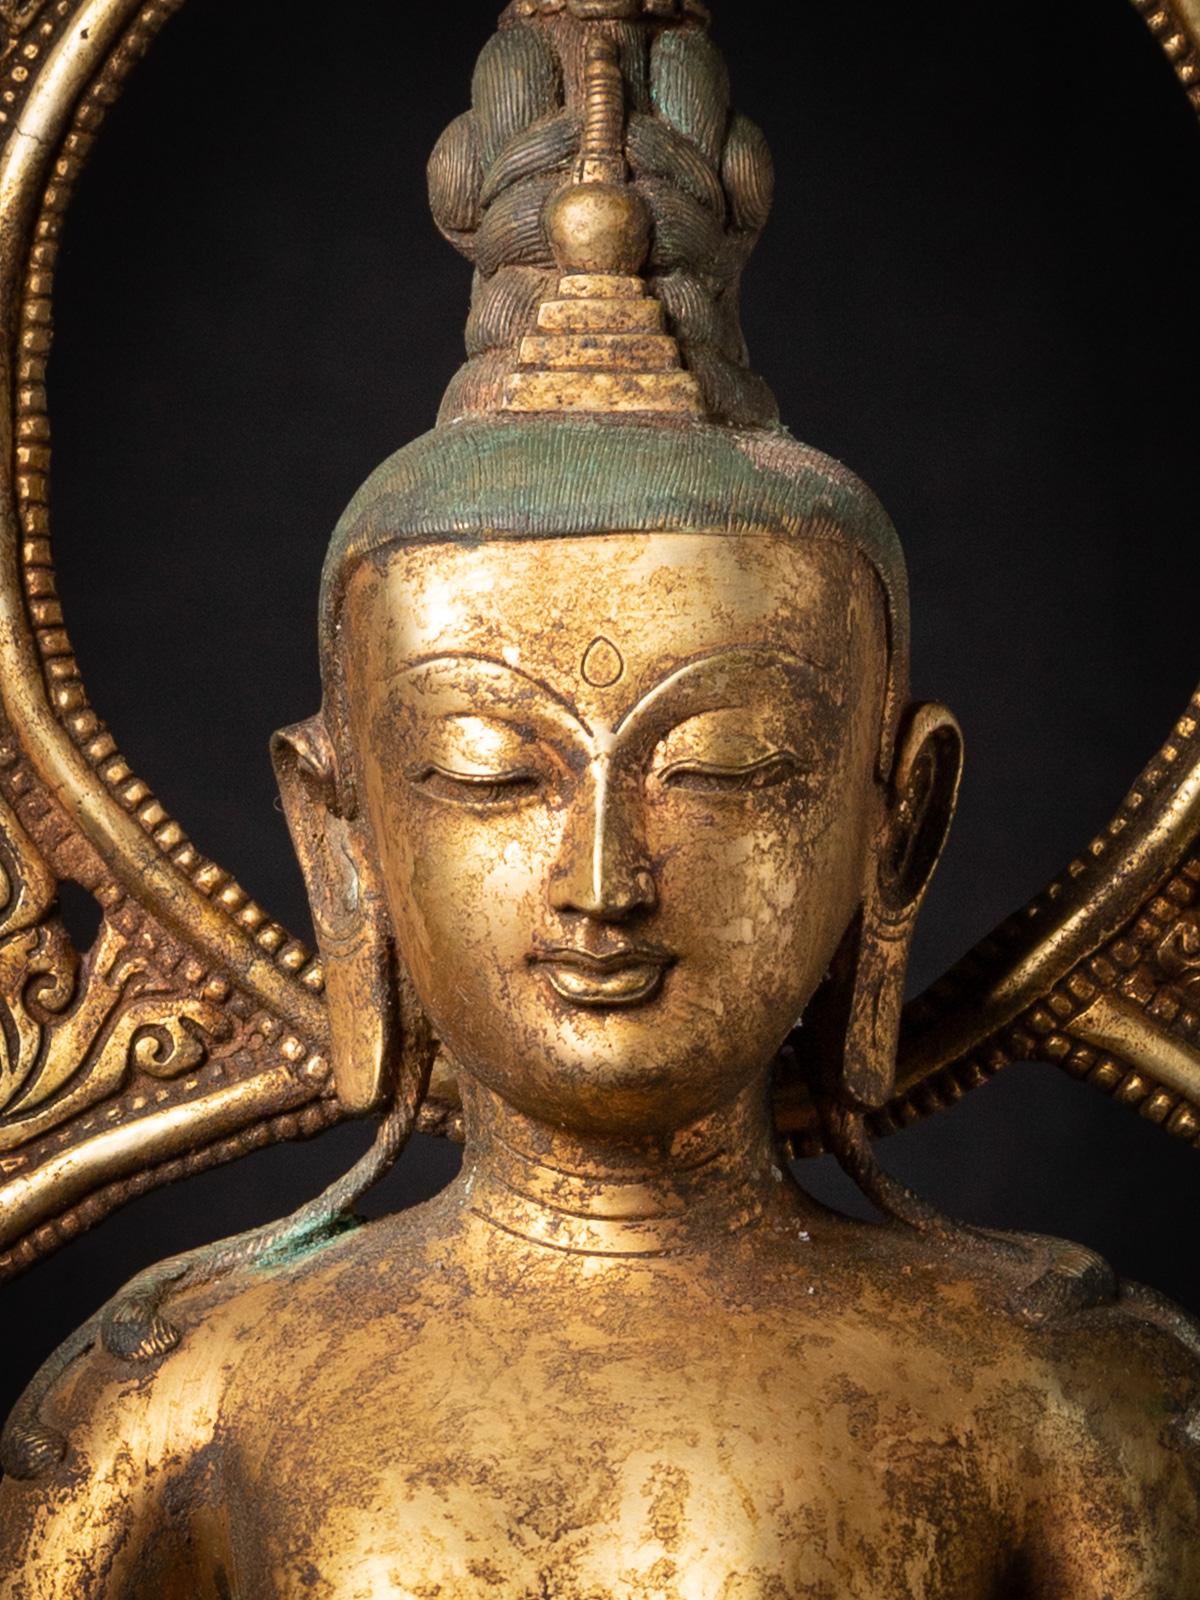 Der nepalesische Bodhisattva Padmapani Lokeshvara aus alter Bronze ist ein wirklich außergewöhnliches und heiliges Artefakt aus Nepal. Diese aus Bronze gefertigte Bodhisattva-Statue hat eine beeindruckende Höhe von 86 cm und misst 31,5 cm in der